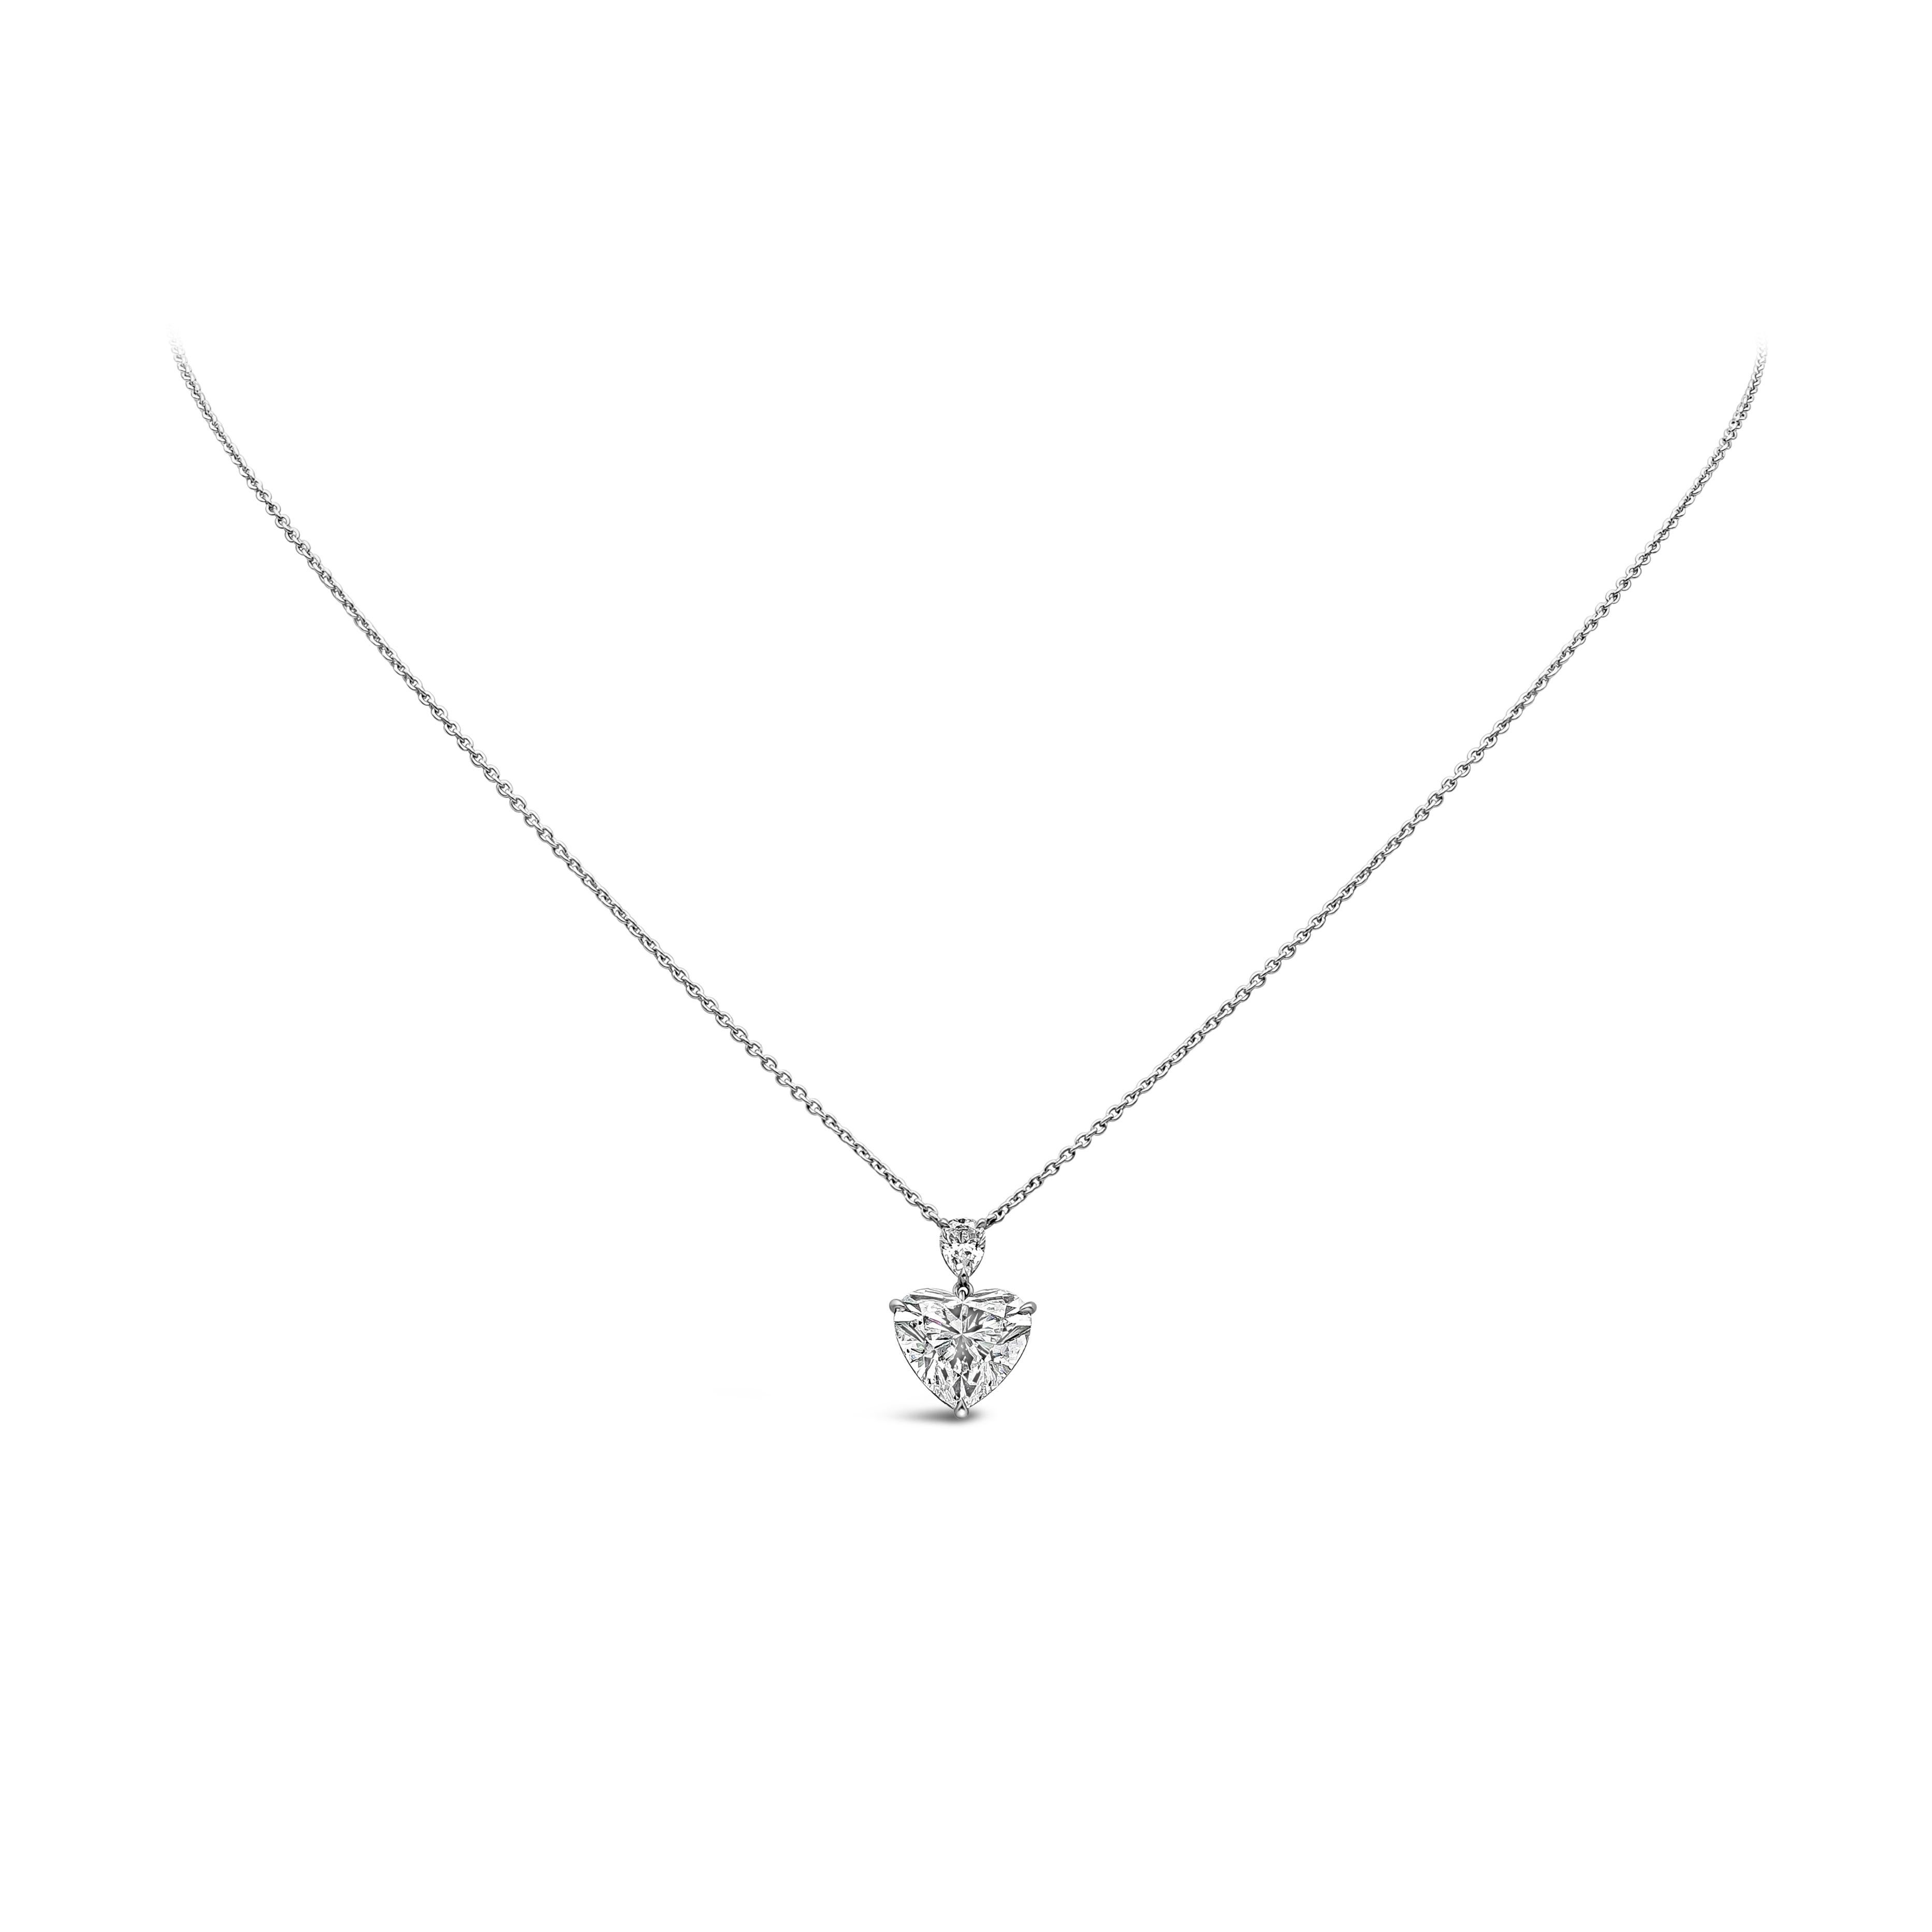 Dieser schöne Anhänger Halskette zeigt eine 3,21 Karat Herzform Diamant GIA zertifiziert als H Farbe und SI2 in Klarheit. In einer dreizackigen Fassung hängt ein birnenförmiger Diamant von 0,23 Karat.  Verbunden mit einer 16 Zoll langen